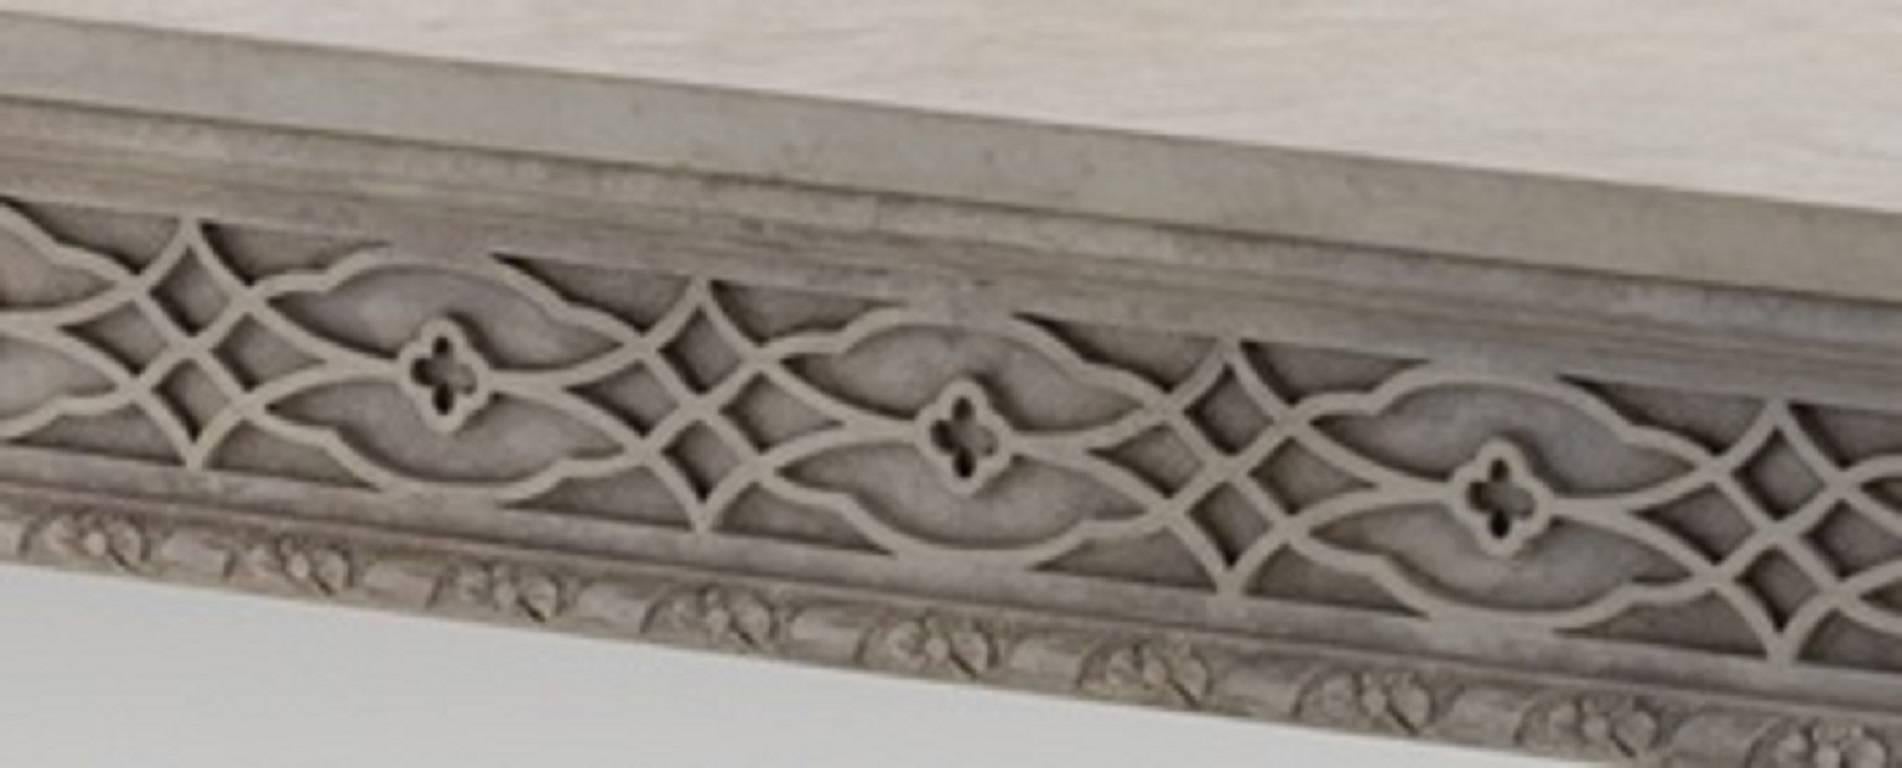 Ein feiner, von Thomas Chippendale inspirierter Bibliothekstisch mit drei verborgenen Schubladen auf beiden Seiten des Frieses. Ausgeführt in einer gealterten Farbe mit Steinoptik. Kann nach Ihren individuellen Maßen angefertigt werden. Dieser